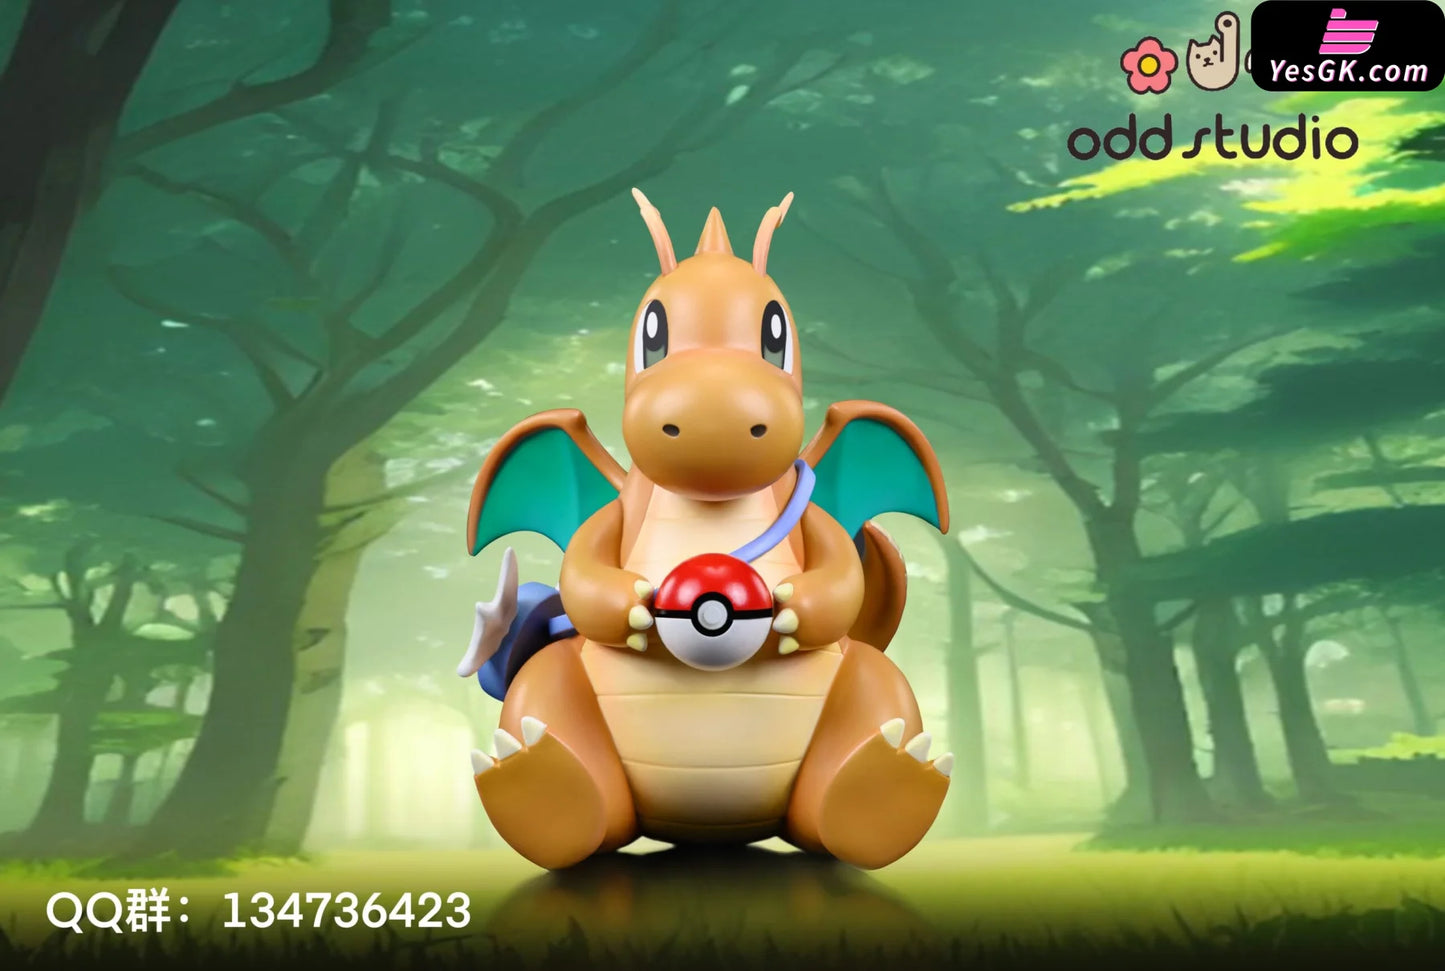 Pokemon Sitting Dragonite Resin Statue - Odd Studio [Pre - Order] Pokémon